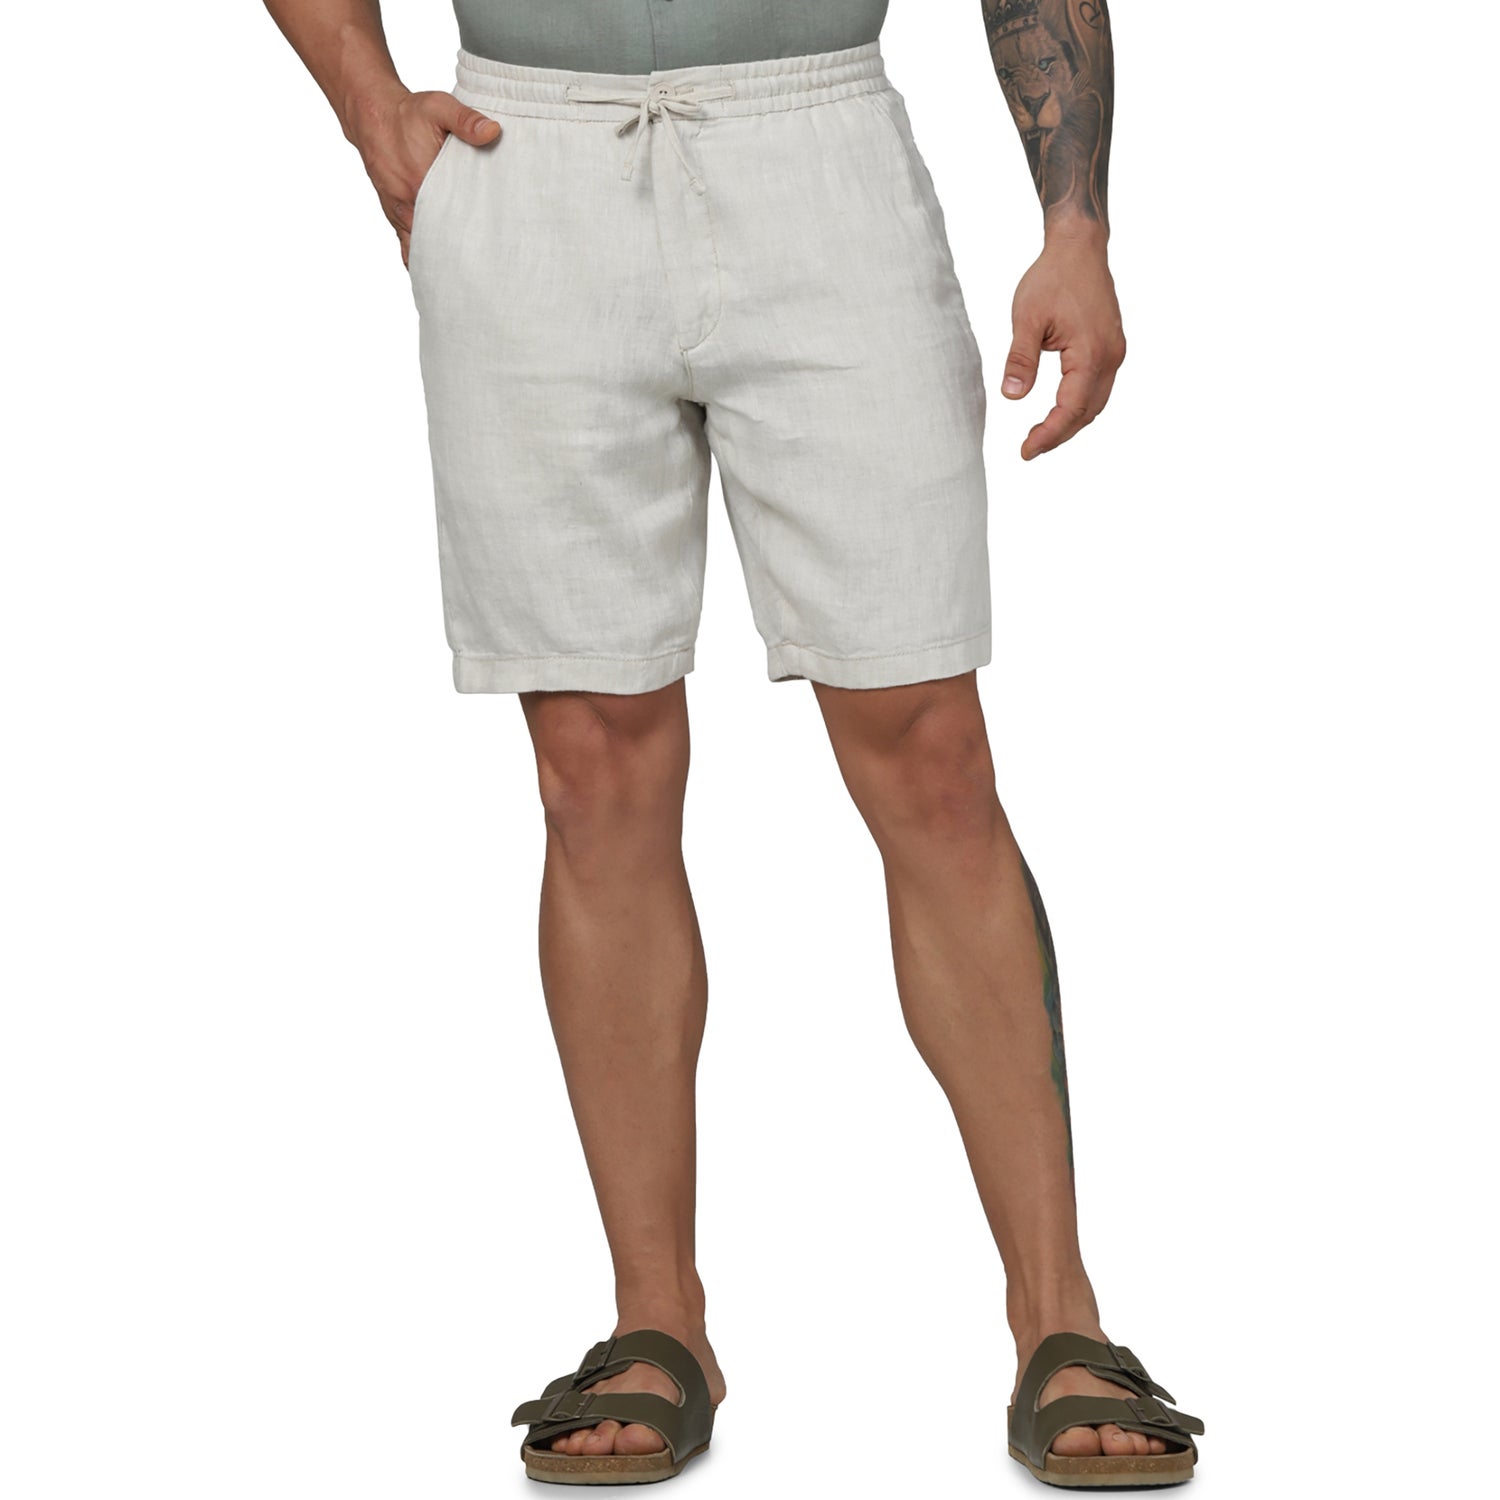 Men's Off White Solid Regular Fit Linen Casual Shorts (DOLINUSBM)